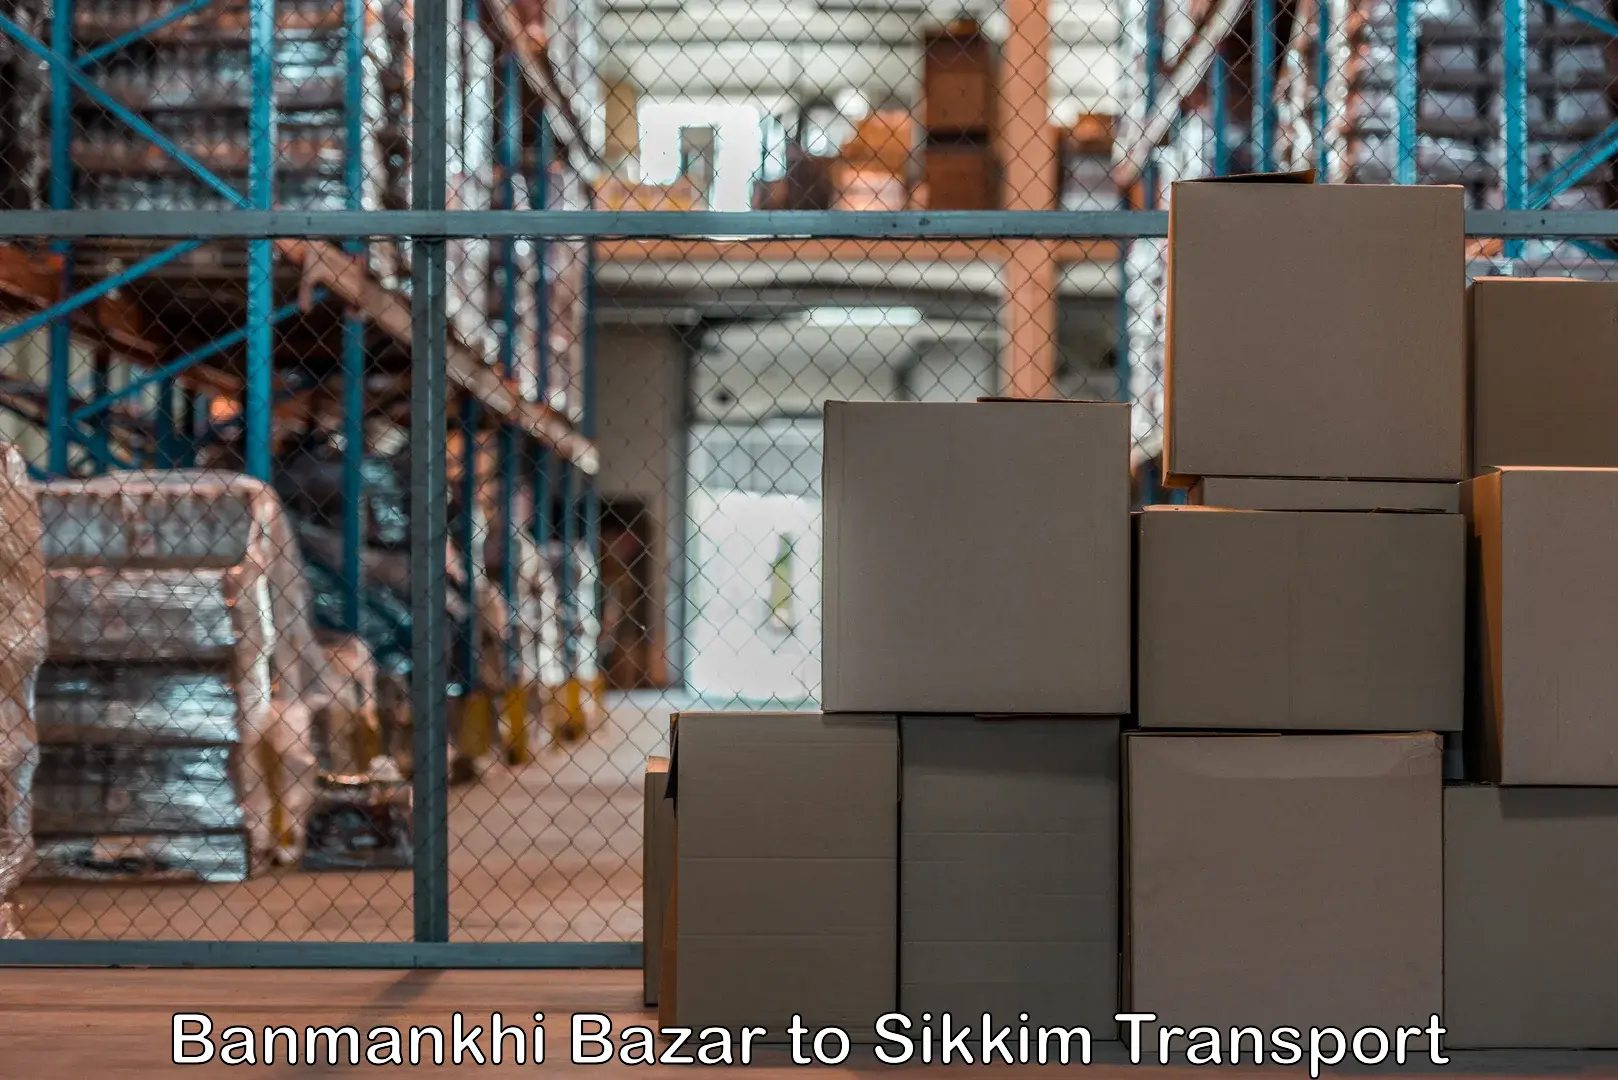 Two wheeler parcel service Banmankhi Bazar to South Sikkim